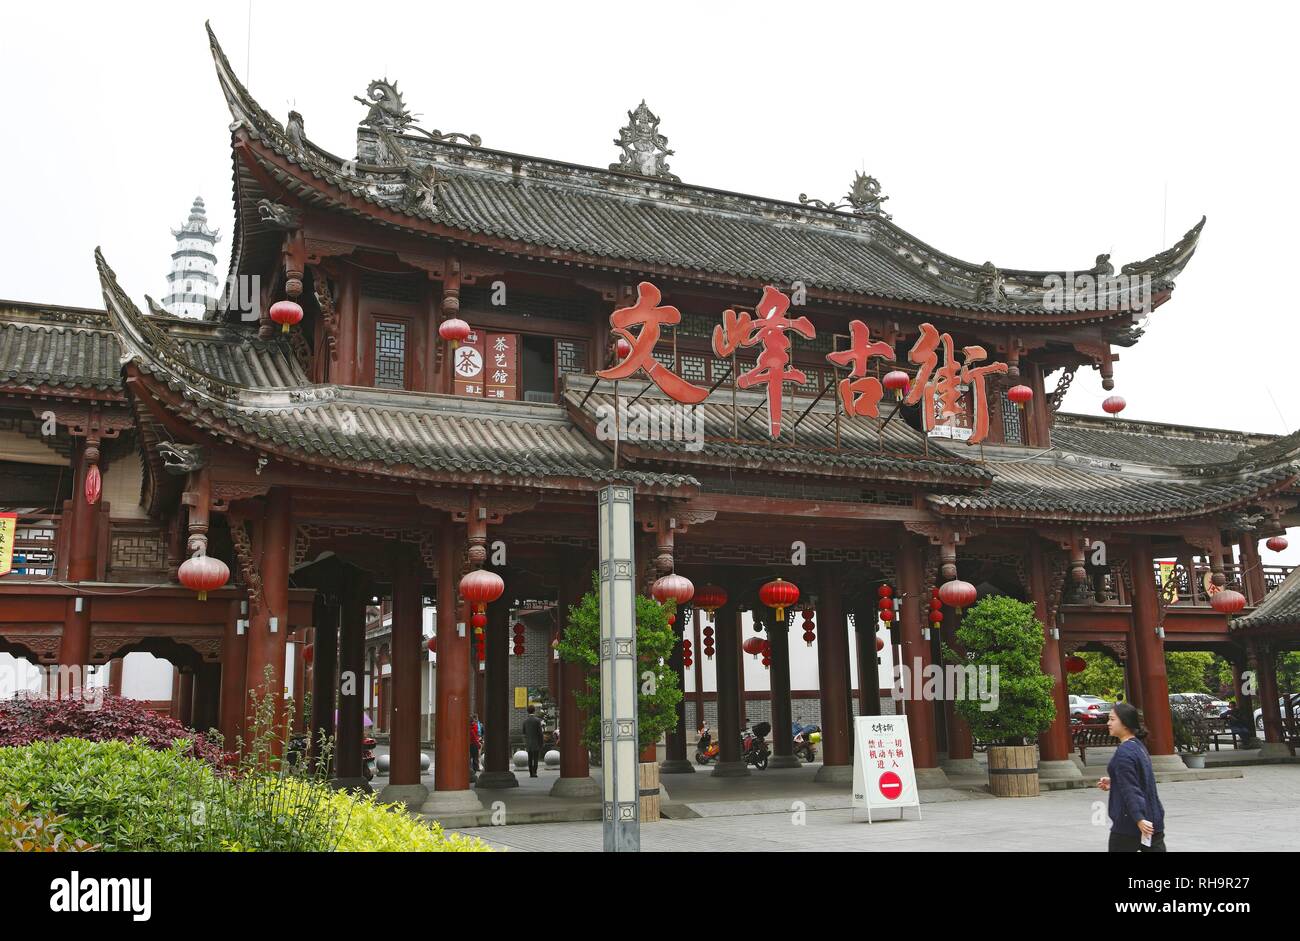 Entrance to the fishing town of Diao Yu Cheng, Chongqing Province, China Stock Photo